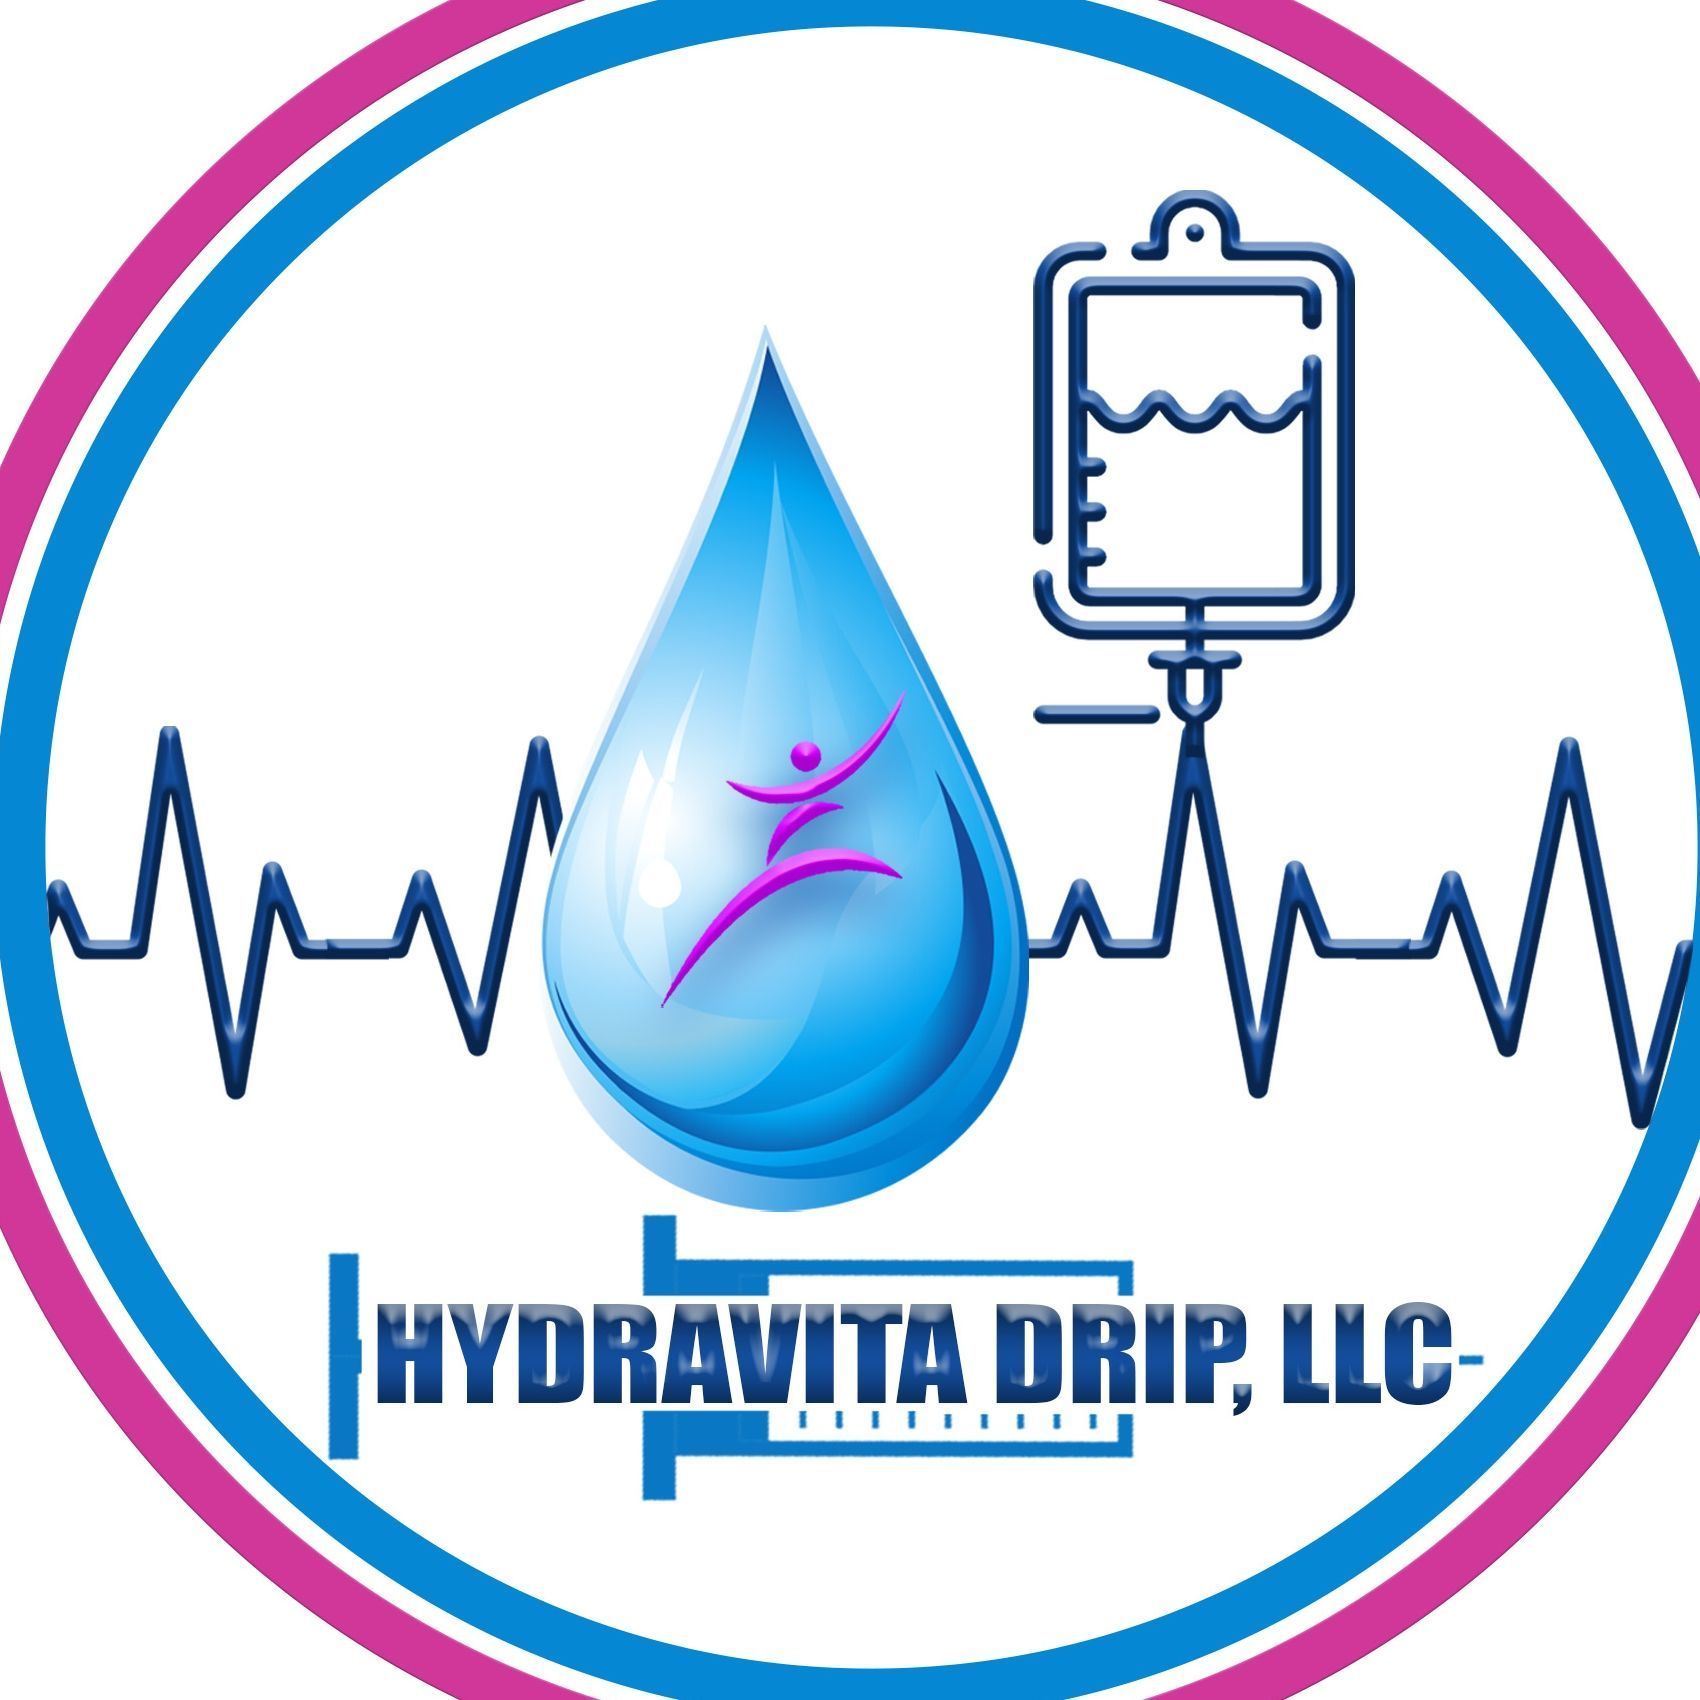 Hydravita Drip, LLC, 11110 Bellaire Blvd, Suite 235, Houston, 77072